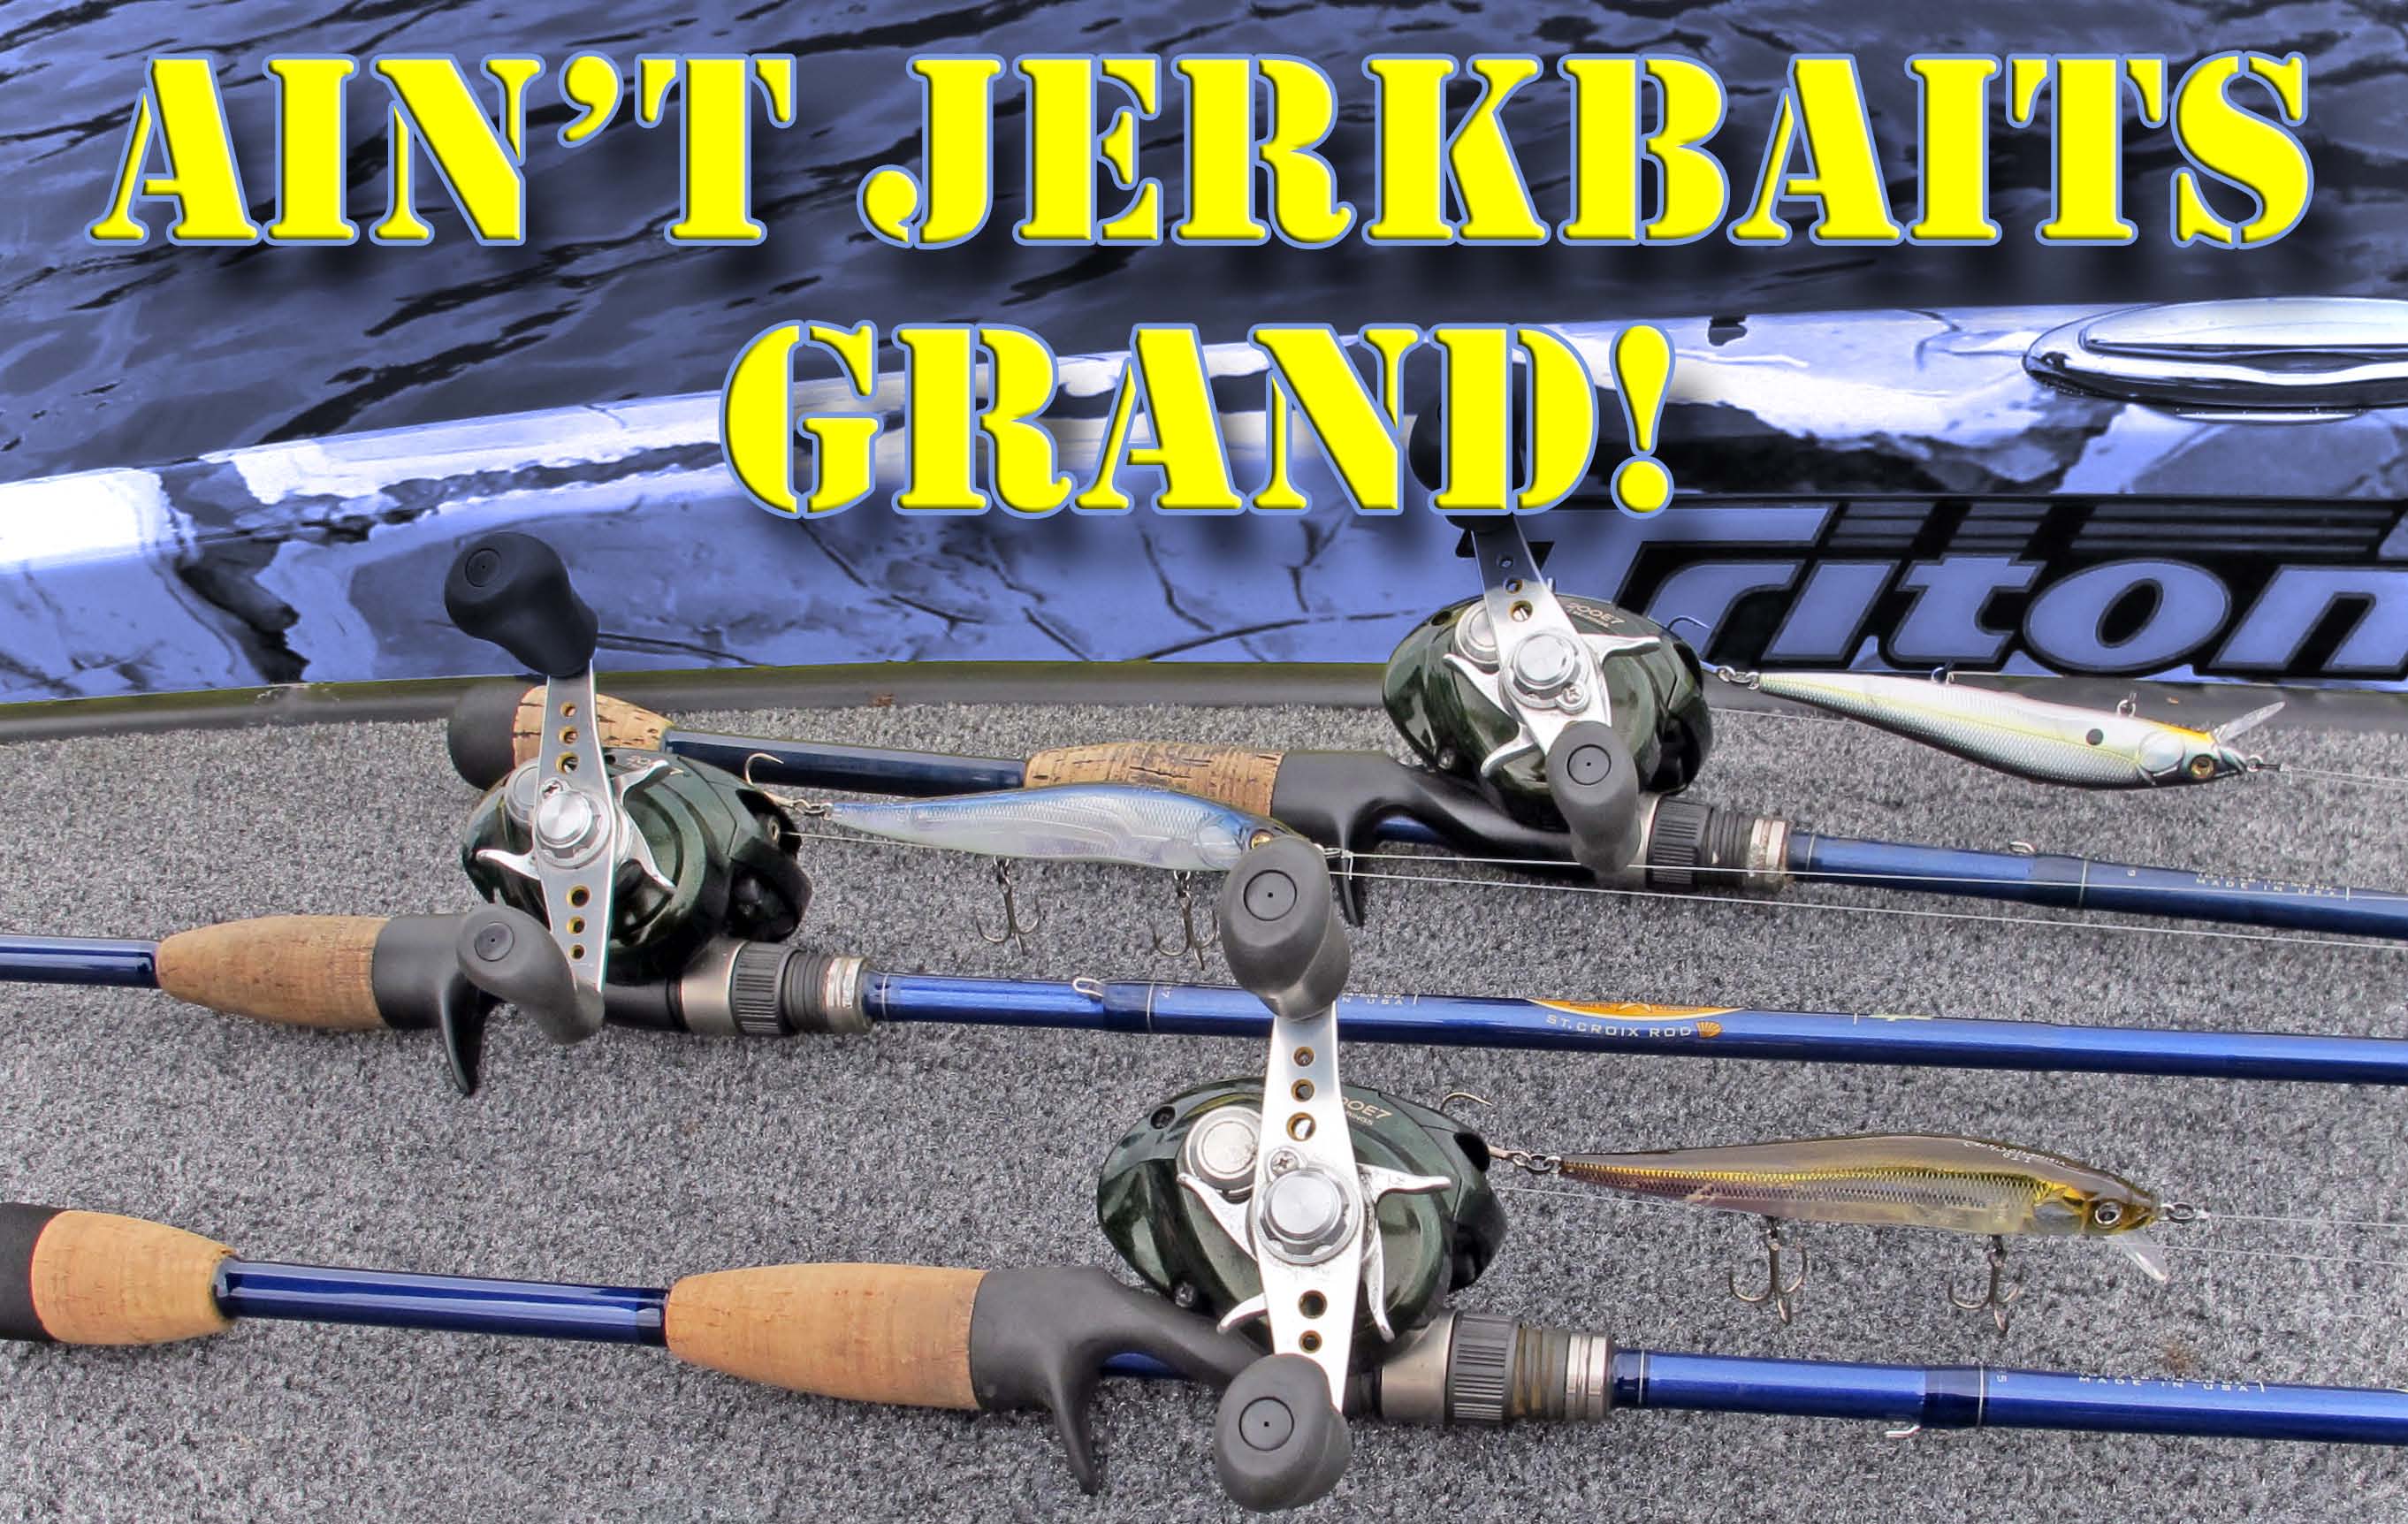 BassdozerStore.com: Ain't Jerkbaits Grand!